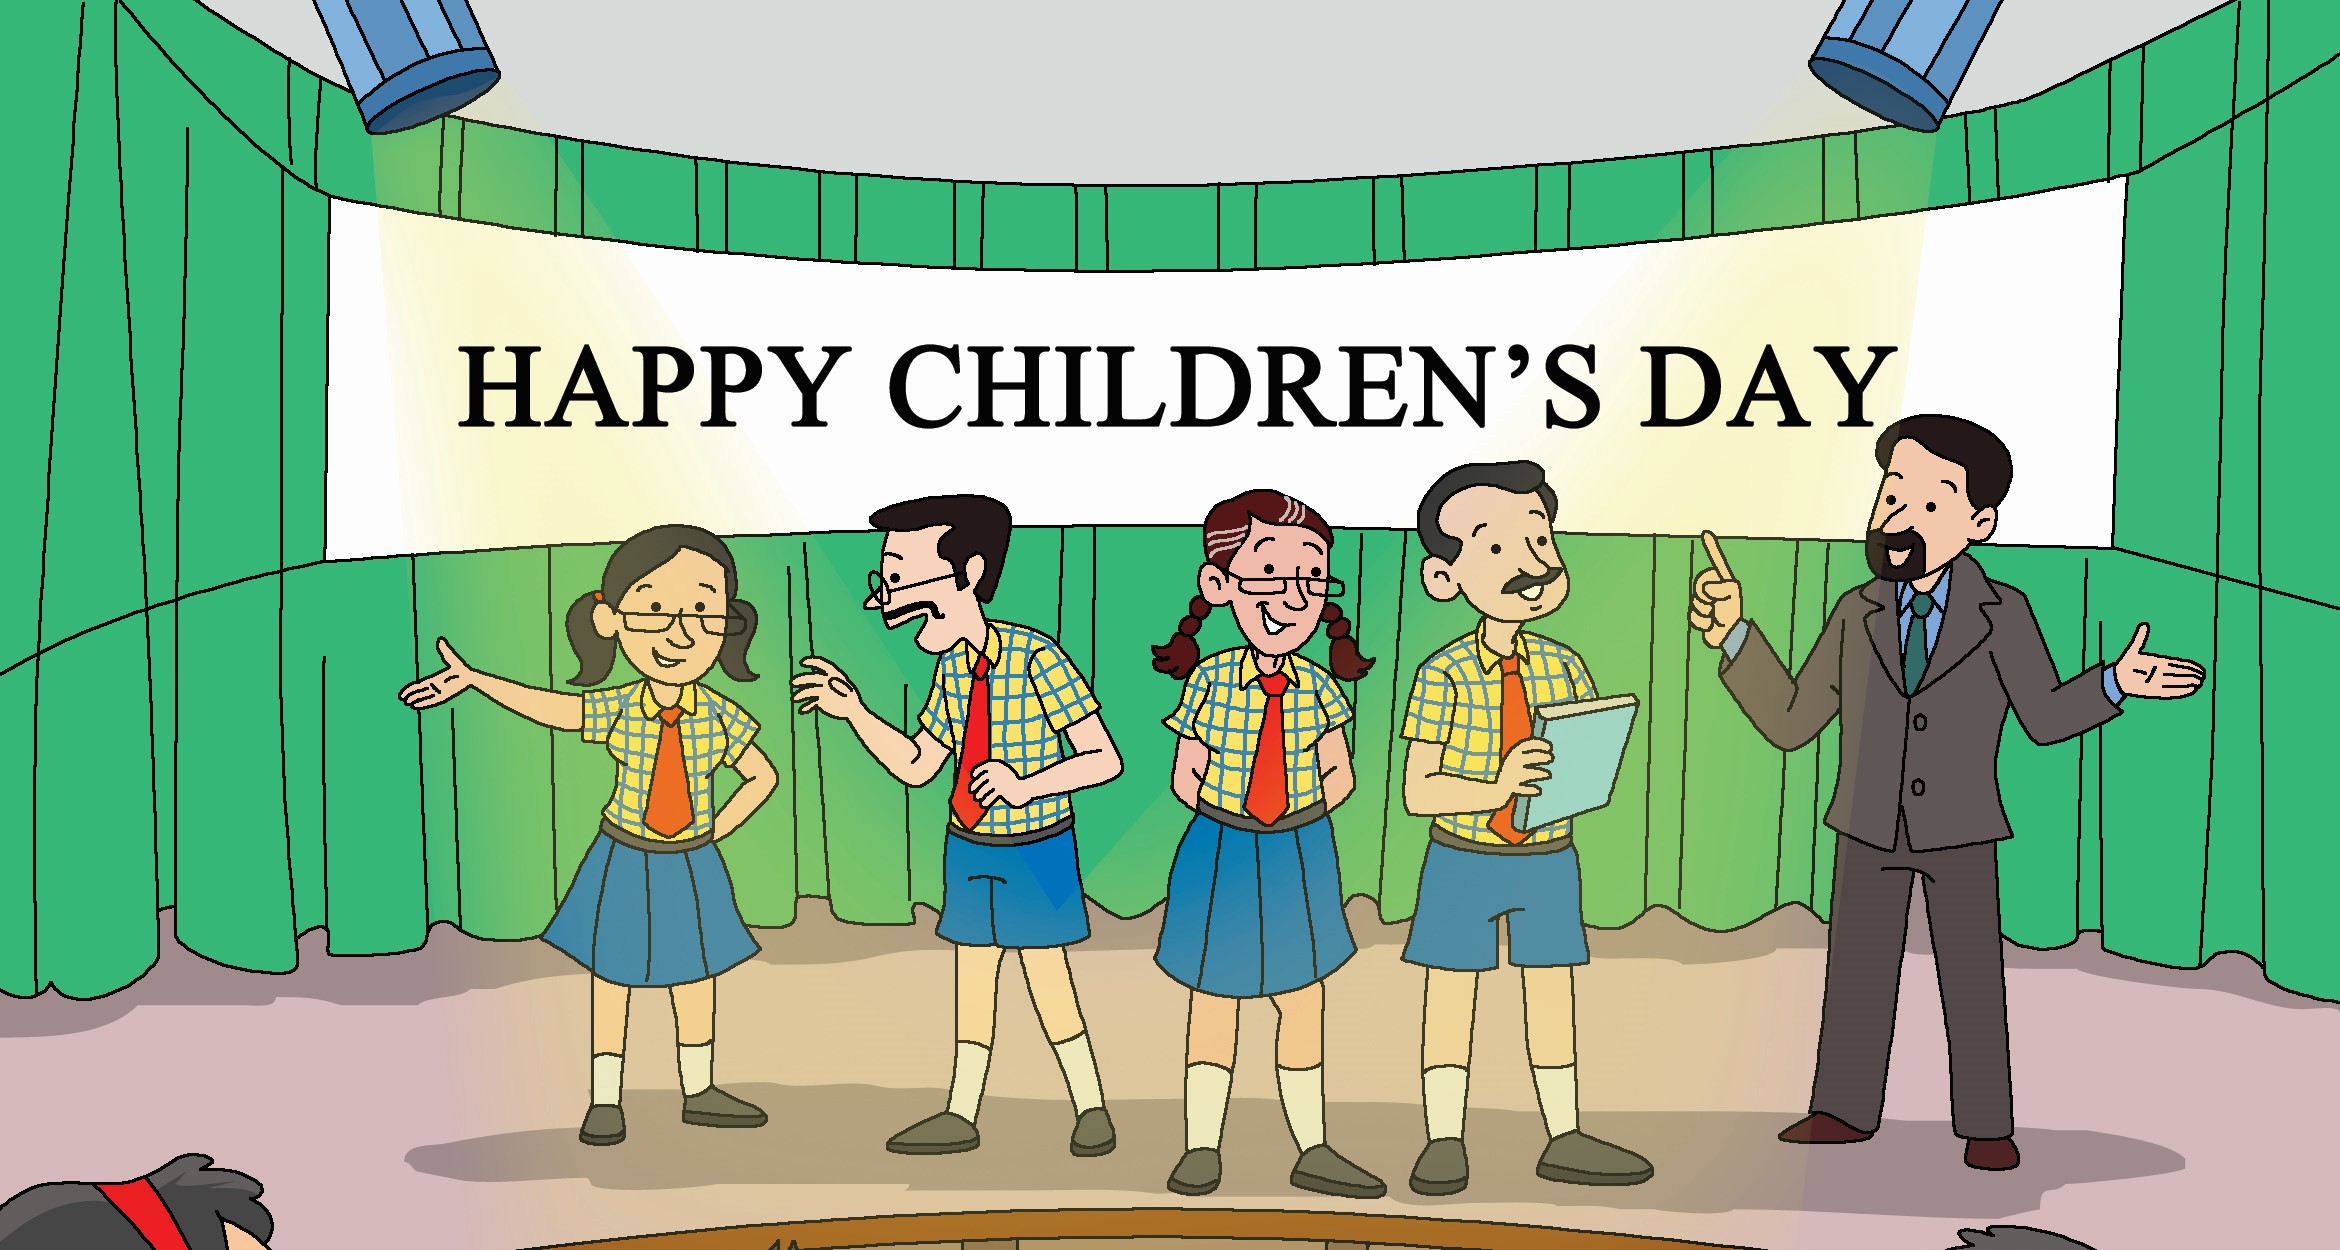 Children’s Day!